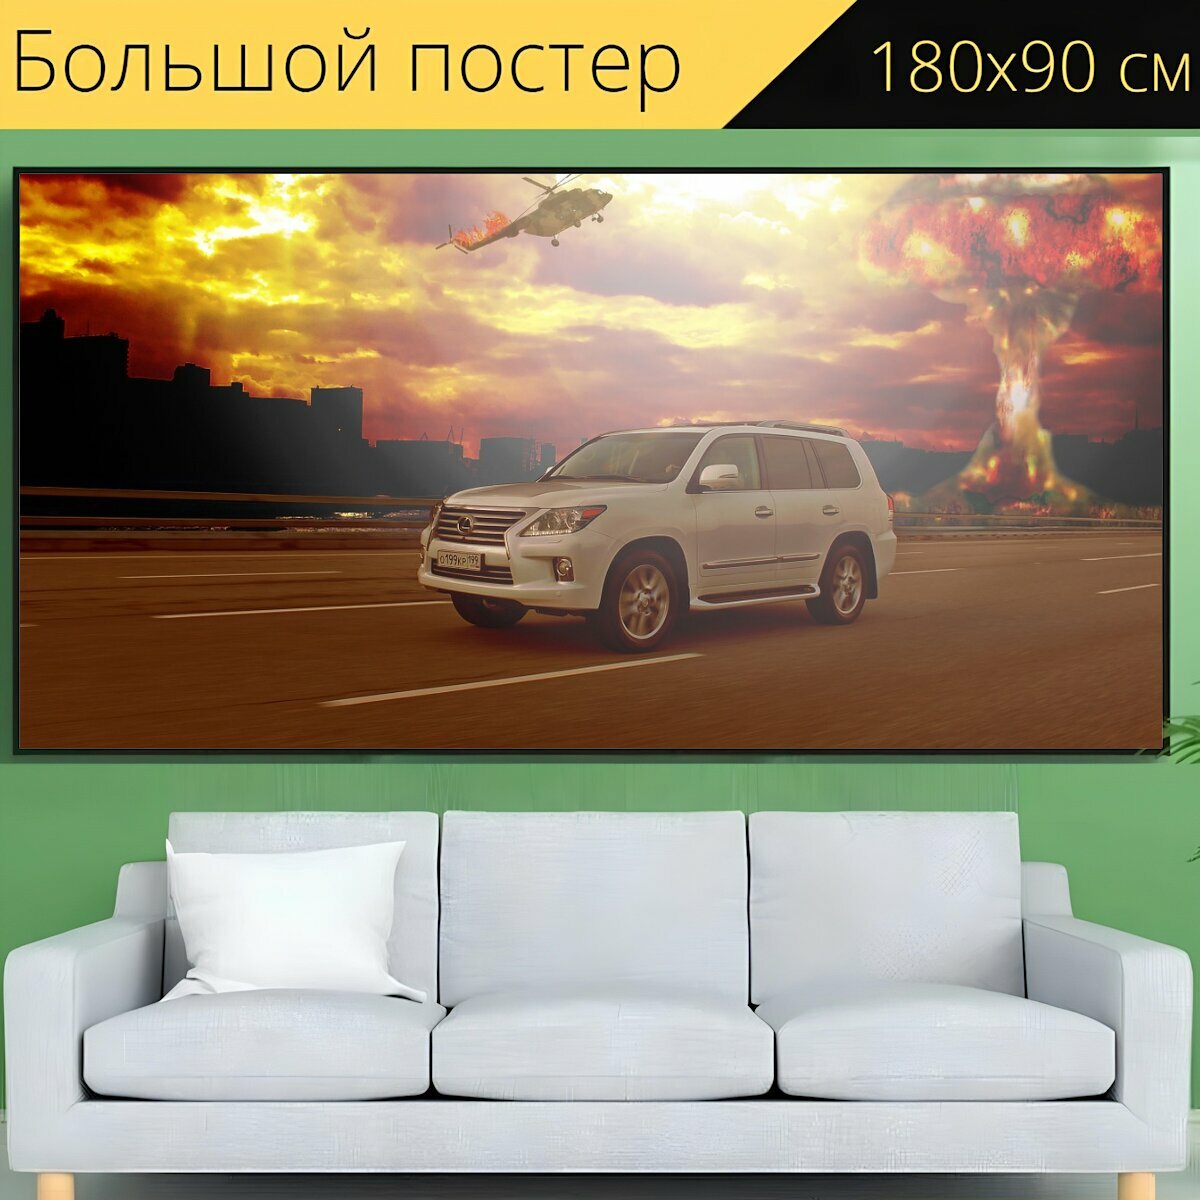 Большой постер "Авто, машина, автомобиль" 180 x 90 см. для интерьера